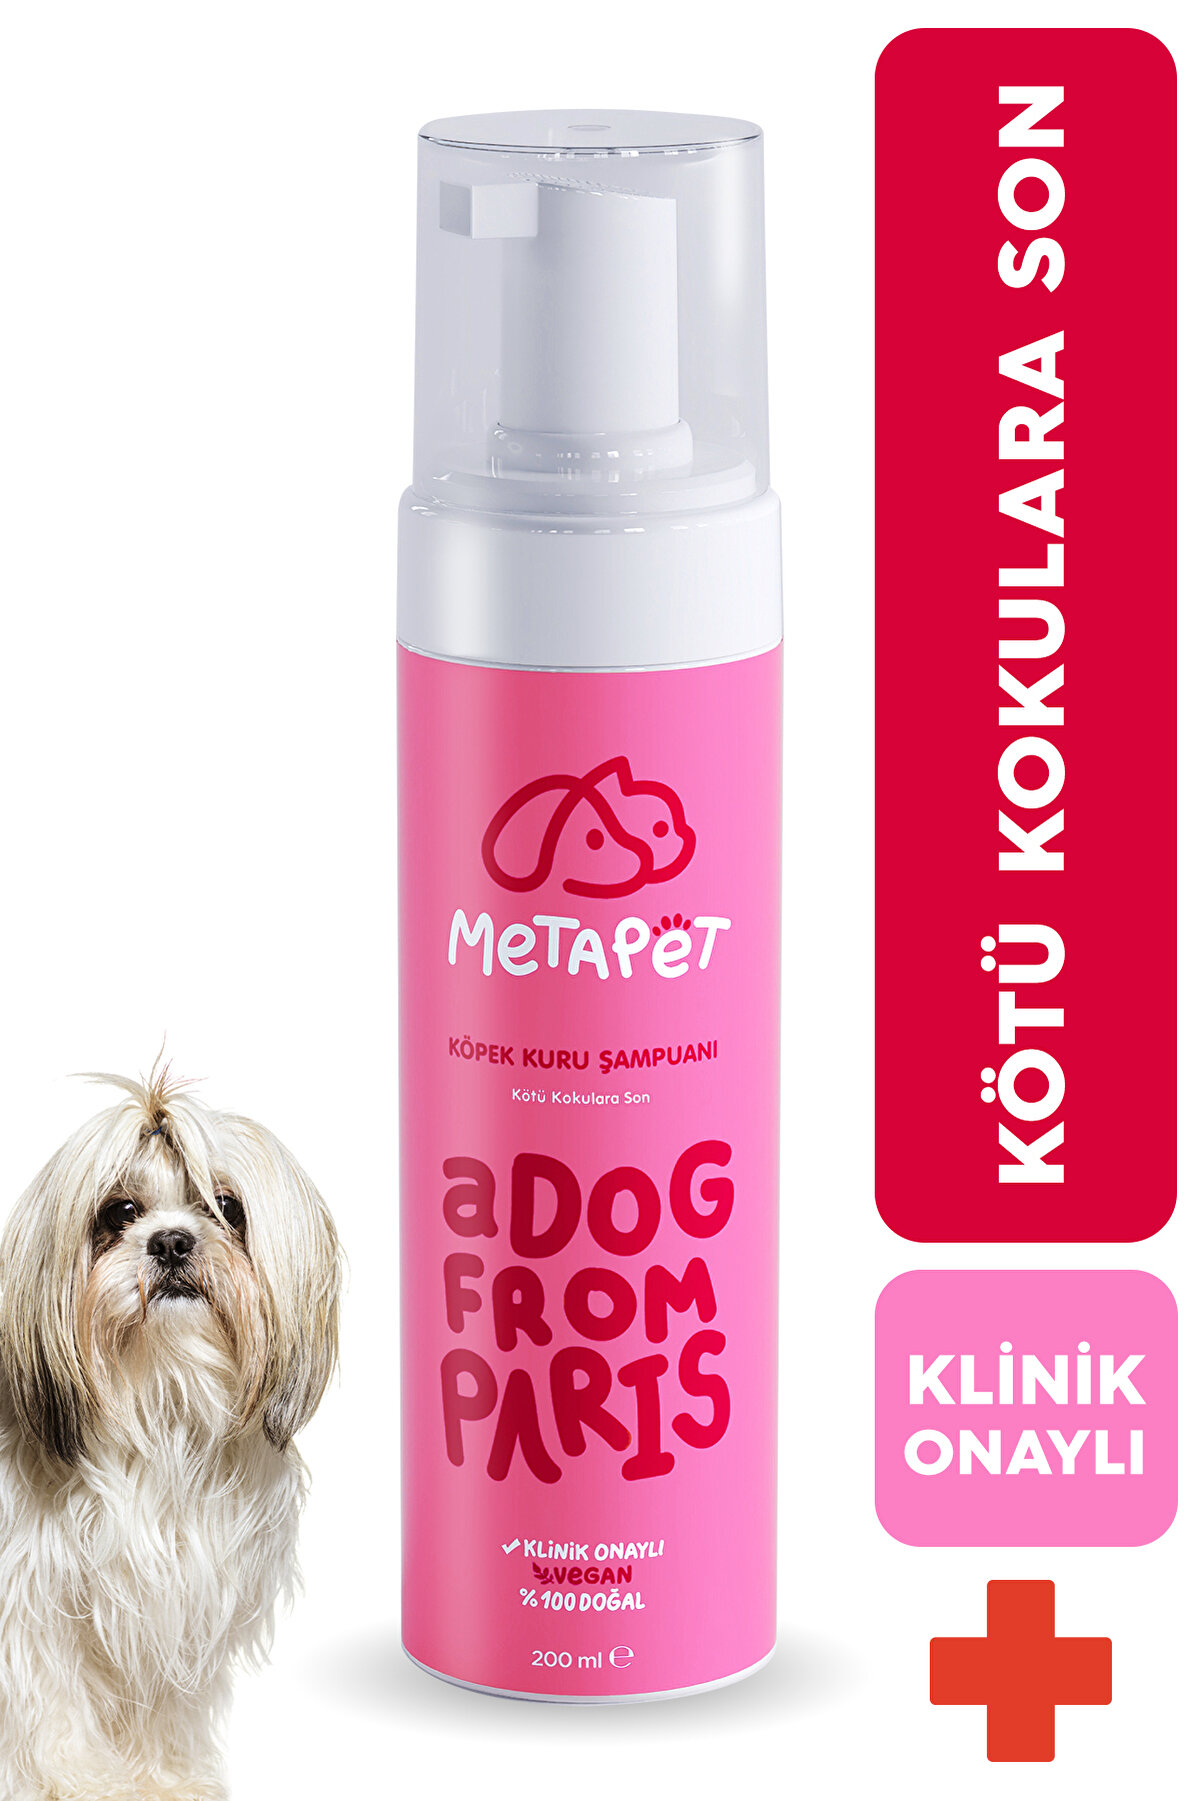 Metapet Koku Giderici Kuru Köpük Köpek Şampuanı, Doğal Ve Organik Köpek Parfümü, Yavrular Için Uygun 200 Ml